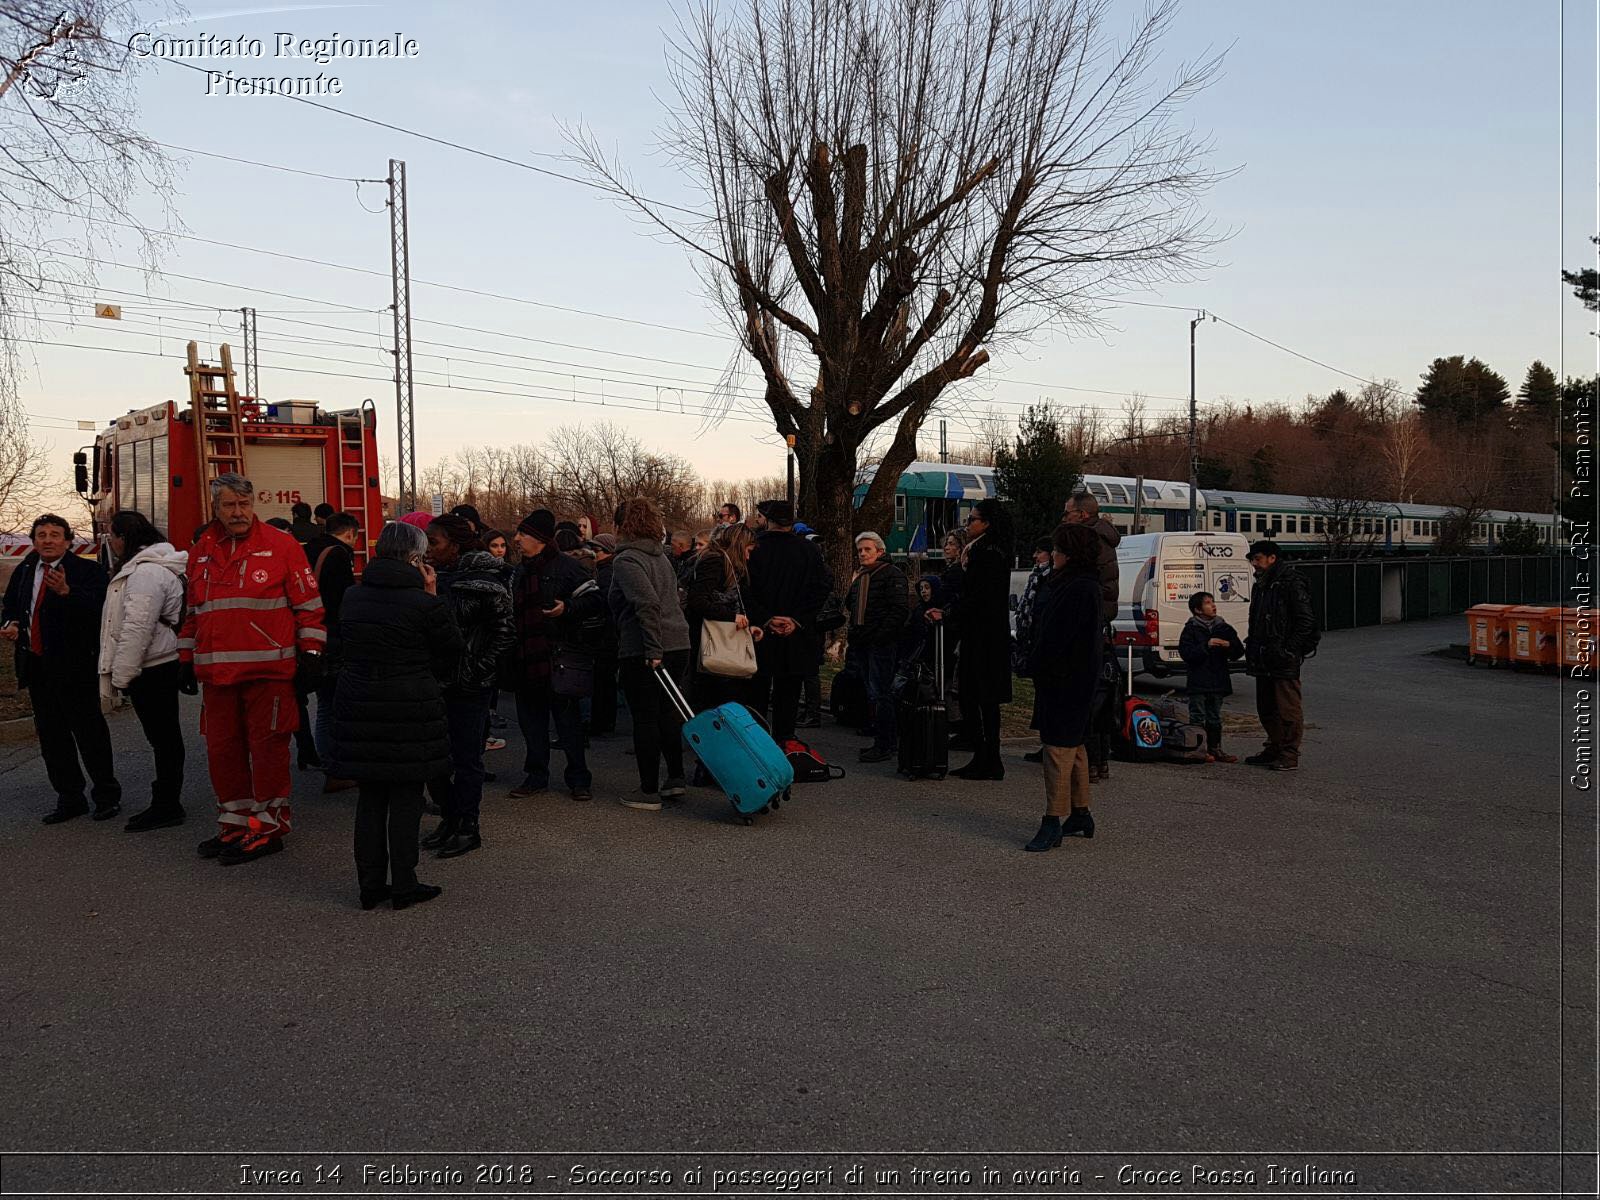 Ivrea 14 Febbraio 2018 - Soccorso ai passeggeri di un treno in avaria - Croce Rossa Italiana- Comitato Regionale del Piemonte